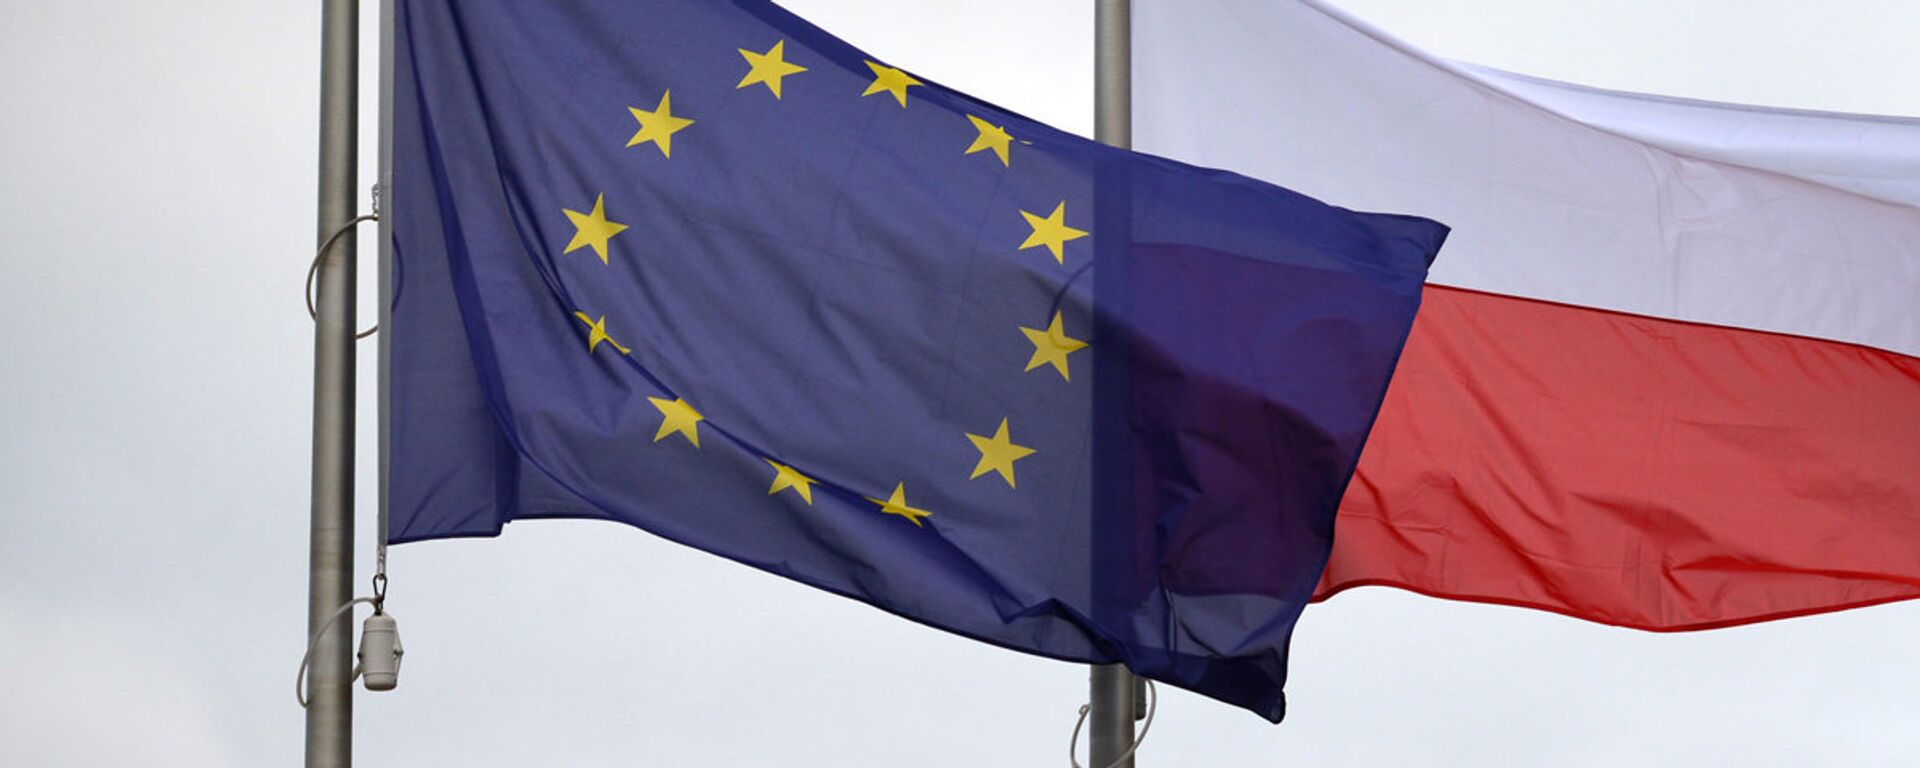 Флаги Евросоюза и Польши - Sputnik Latvija, 1920, 03.10.2020